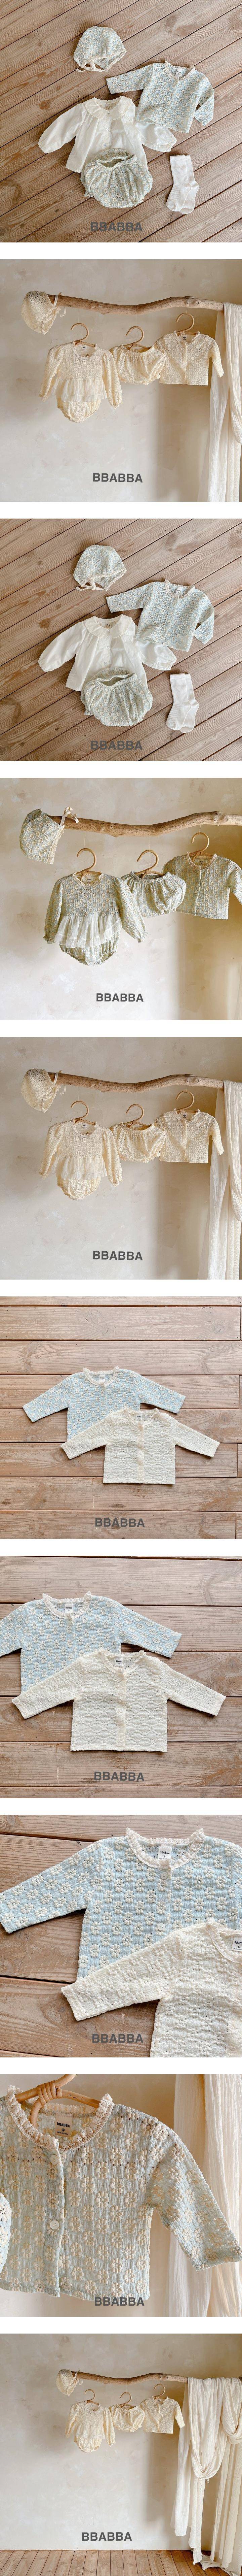 Bbabba - Korean Baby Fashion - #babygirlfashion - I Love Lace Cardigan - 2